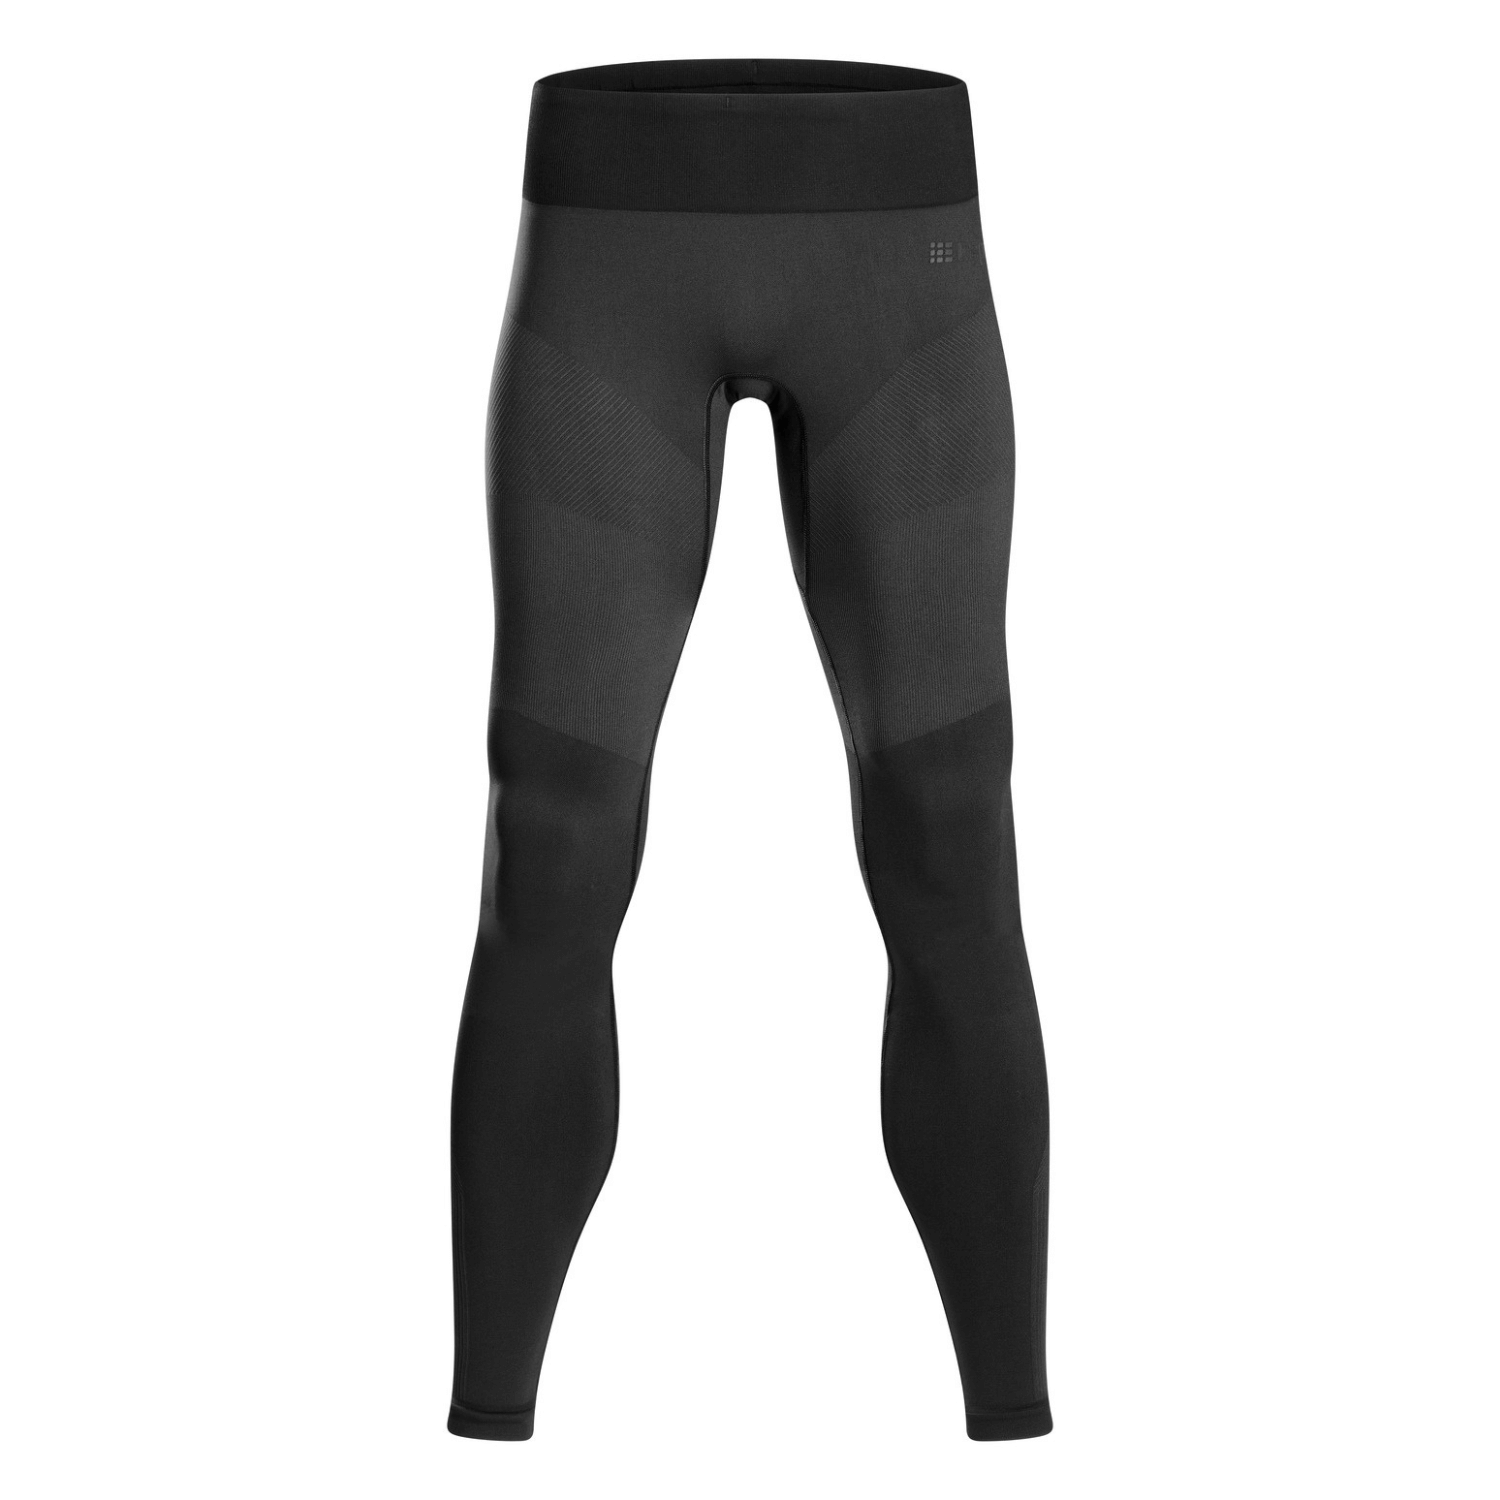 Męskie legginsy kompresyjne do biegania i ćwiczeń spodnie treningowe CEP